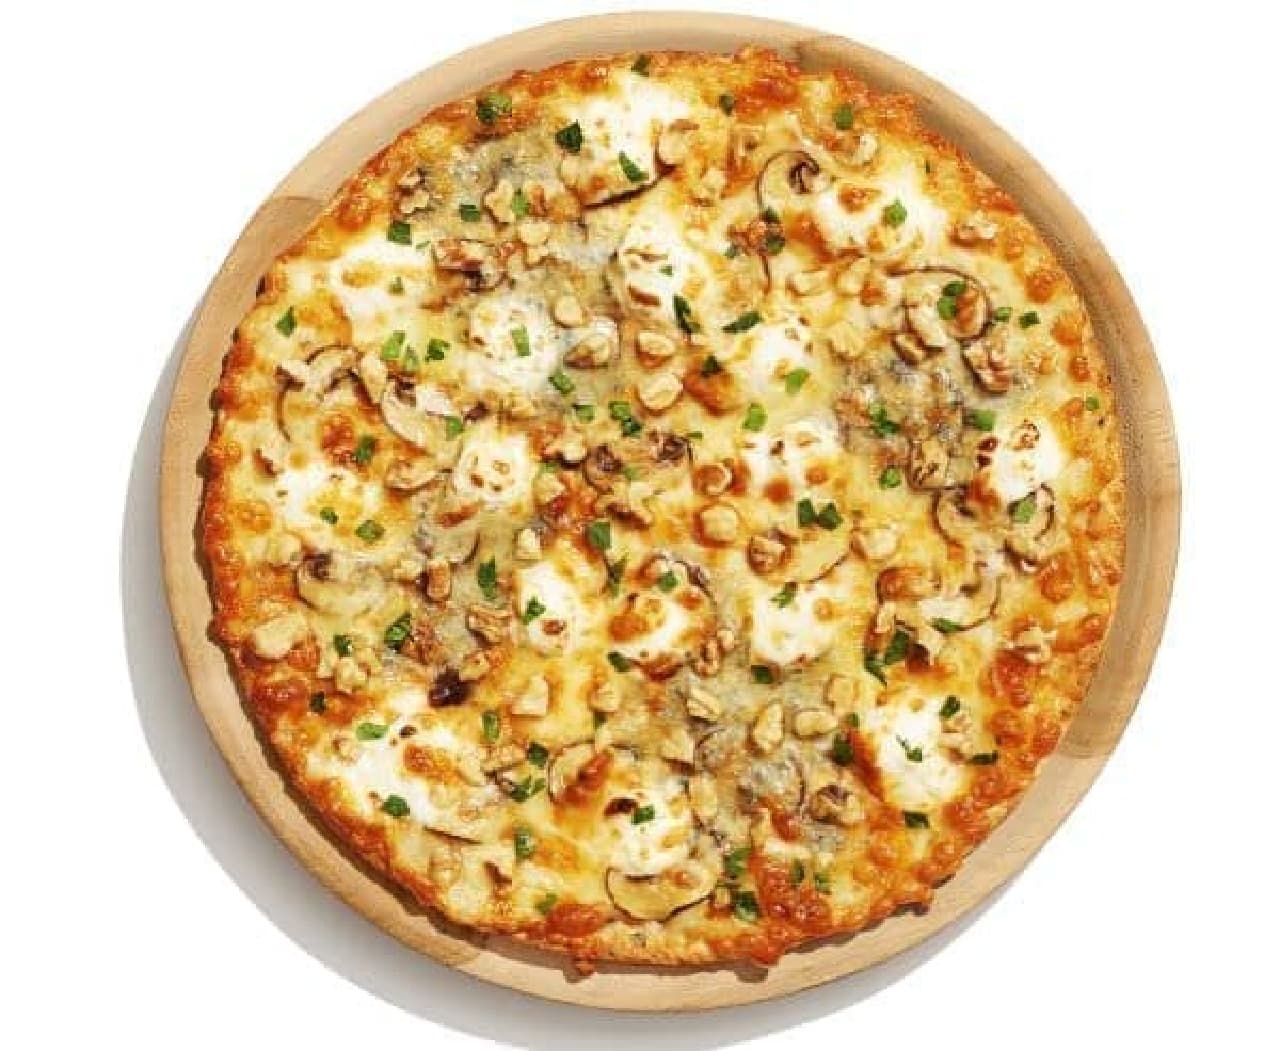 トッピングにスーパーフードが使われたピザ「PIZZA-LA SUPER PLUSシリーズ」の販売エリアが、6月21日より13都道府県104店舗に拡大する